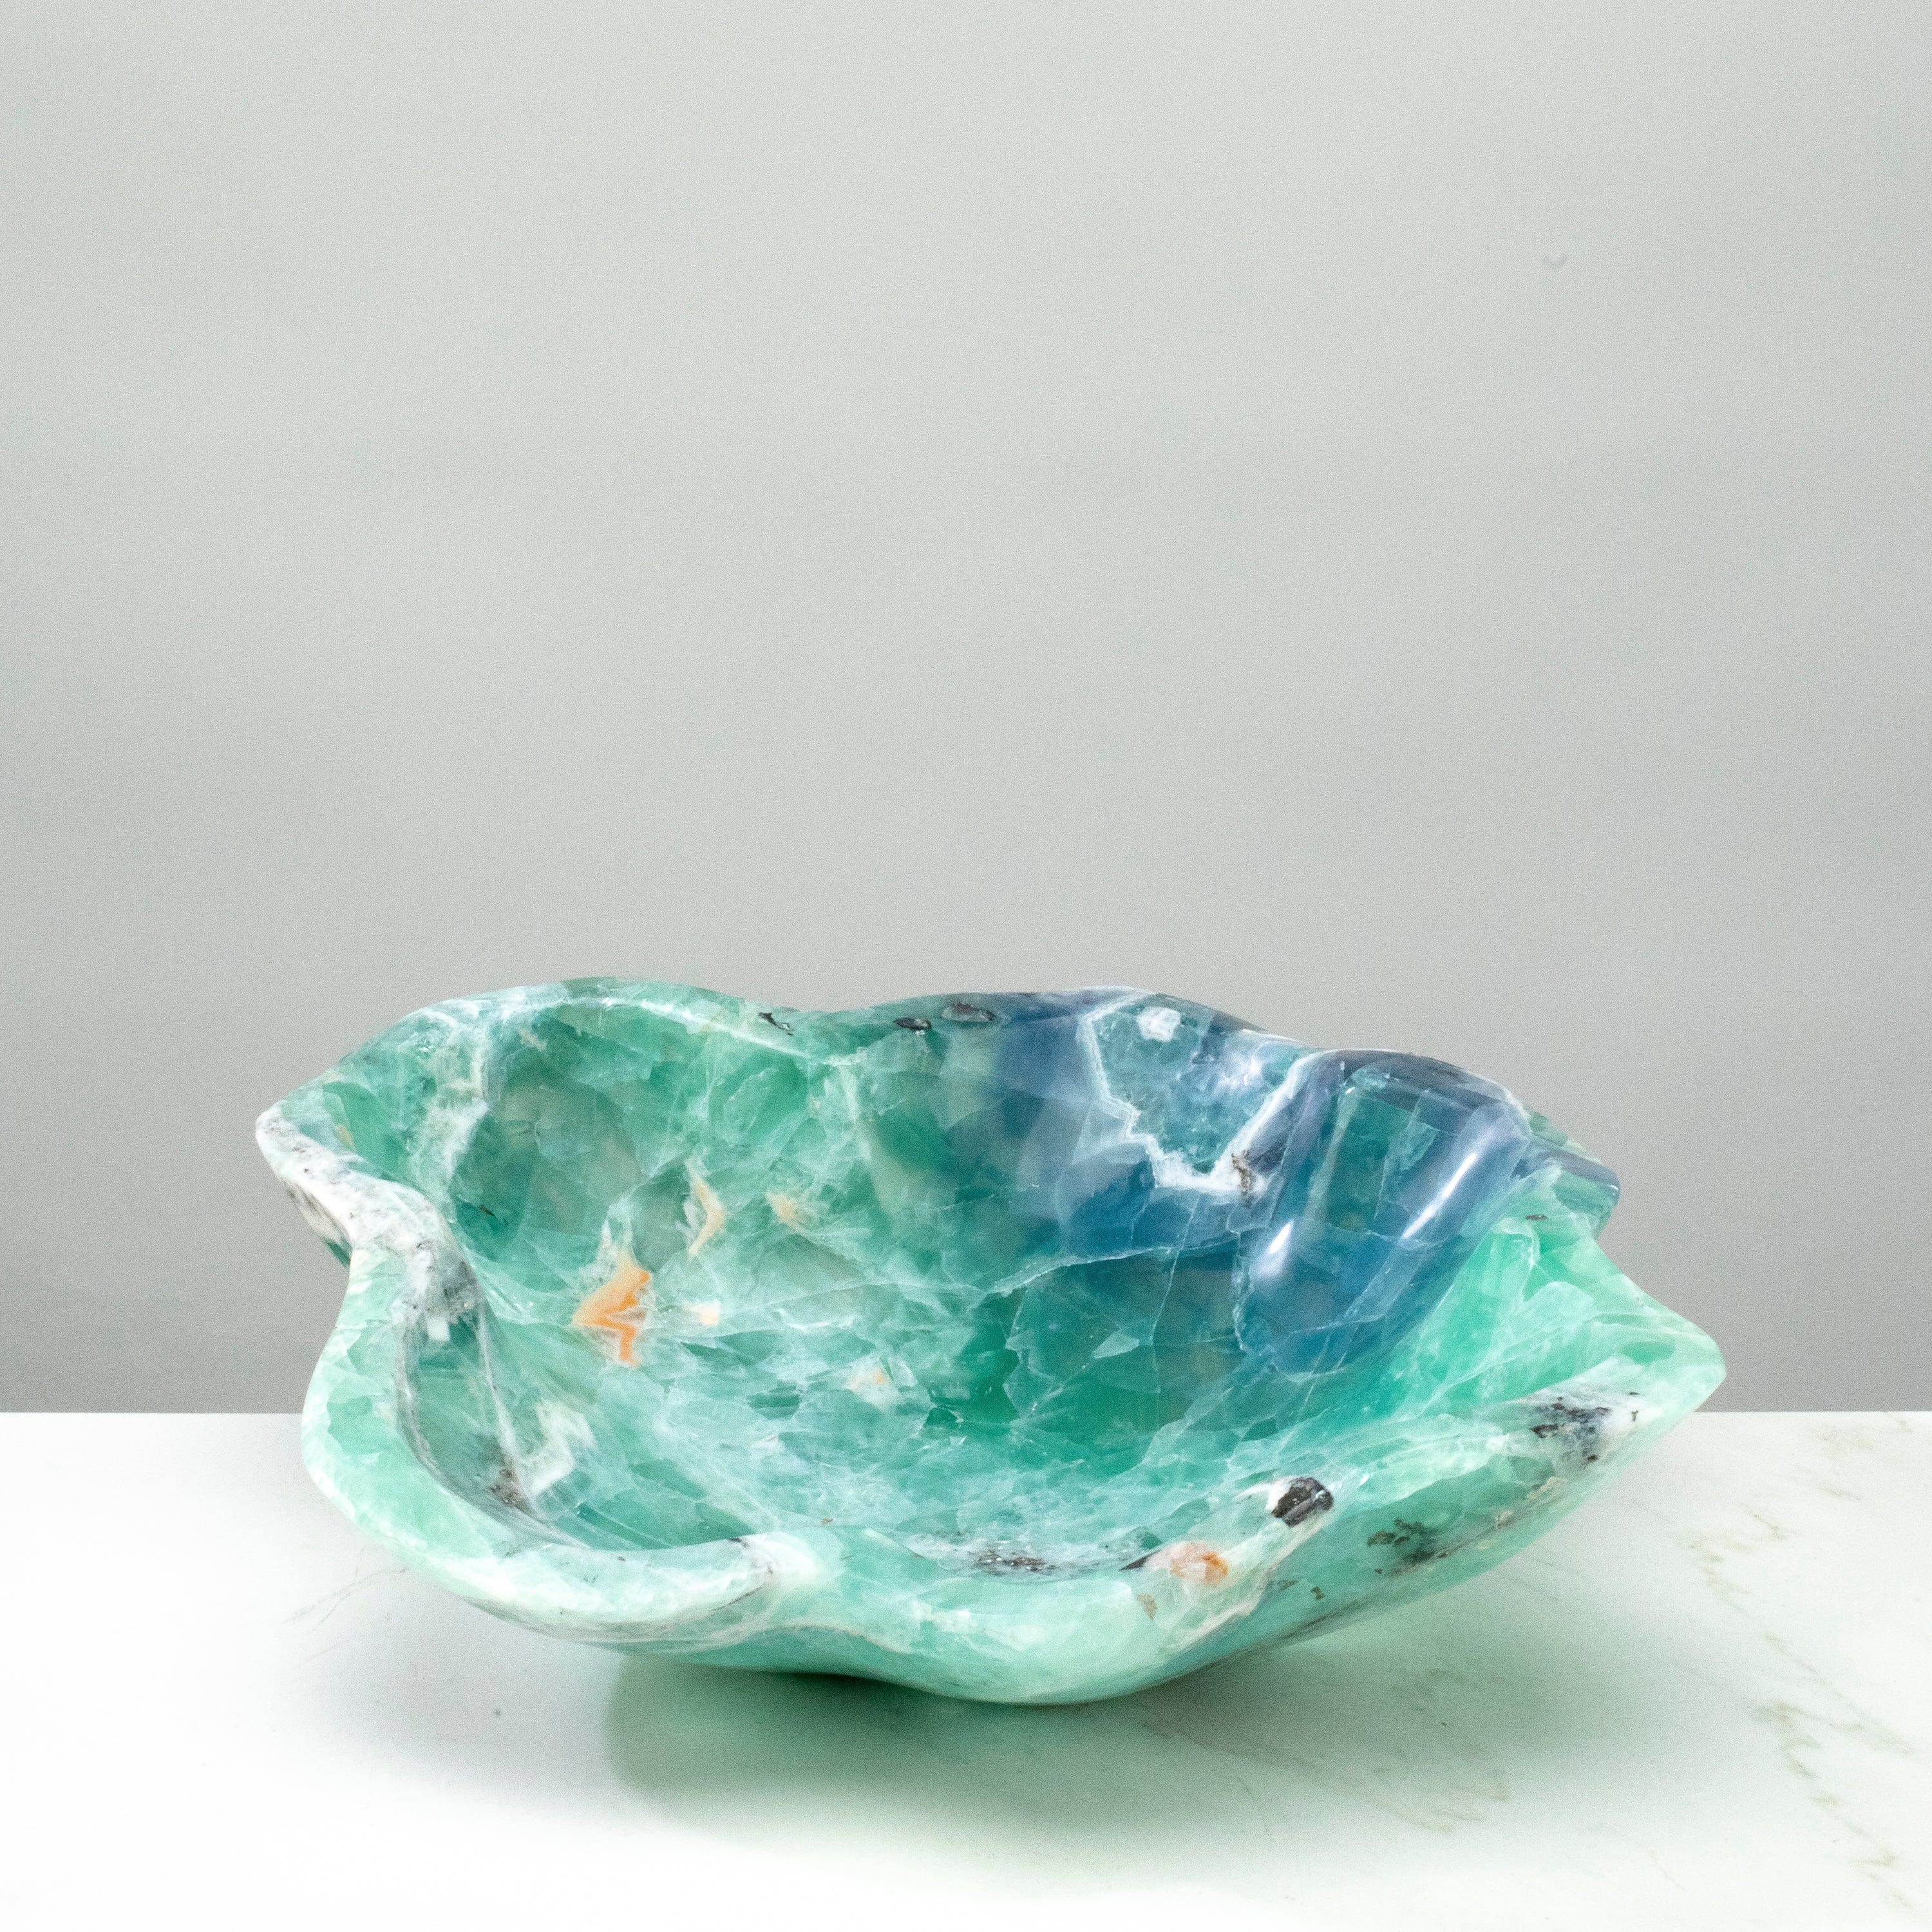 KALIFANO Gemstone Bowls Natural Blue / Green Fluorite Bowl 13" BFL6800.001